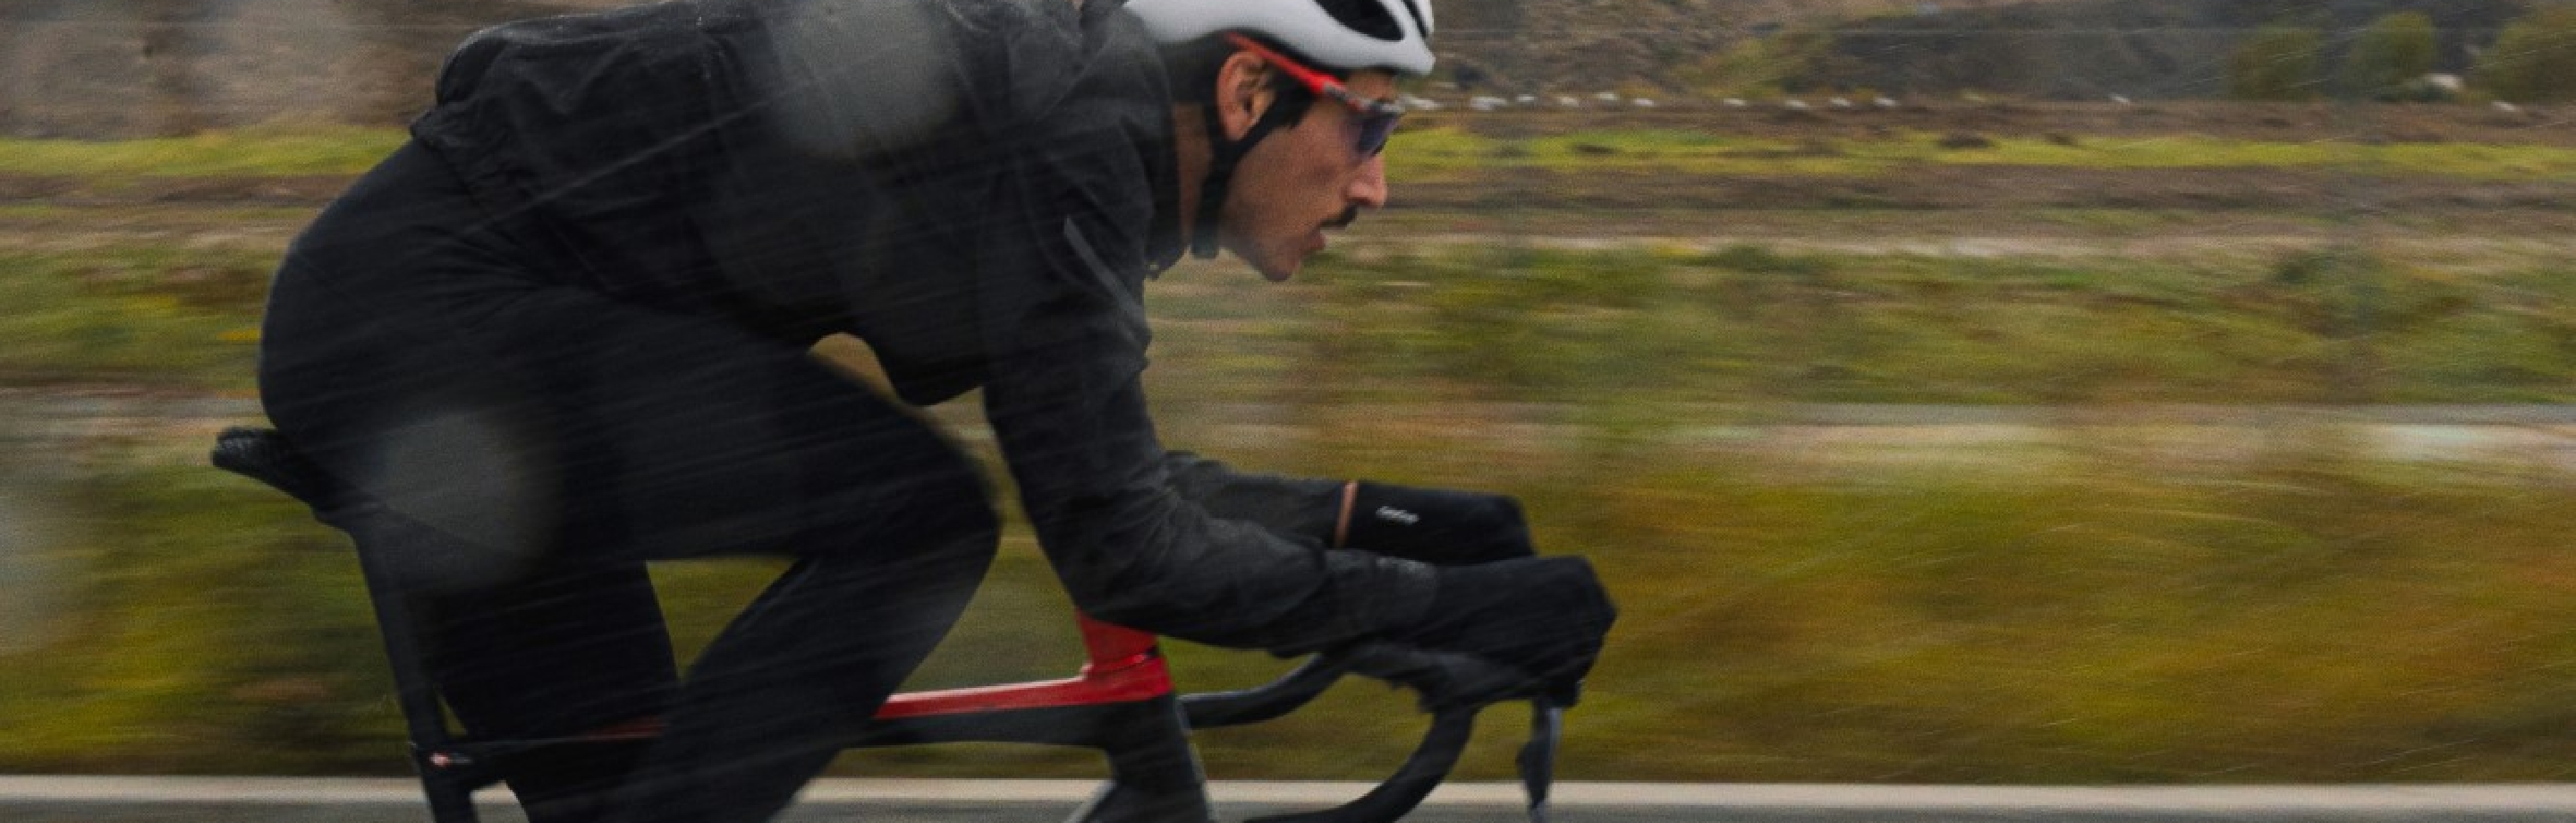 GripGrab overschoenen, fietshandschoenen & nog veel meer - altijd comfortabel onderweg